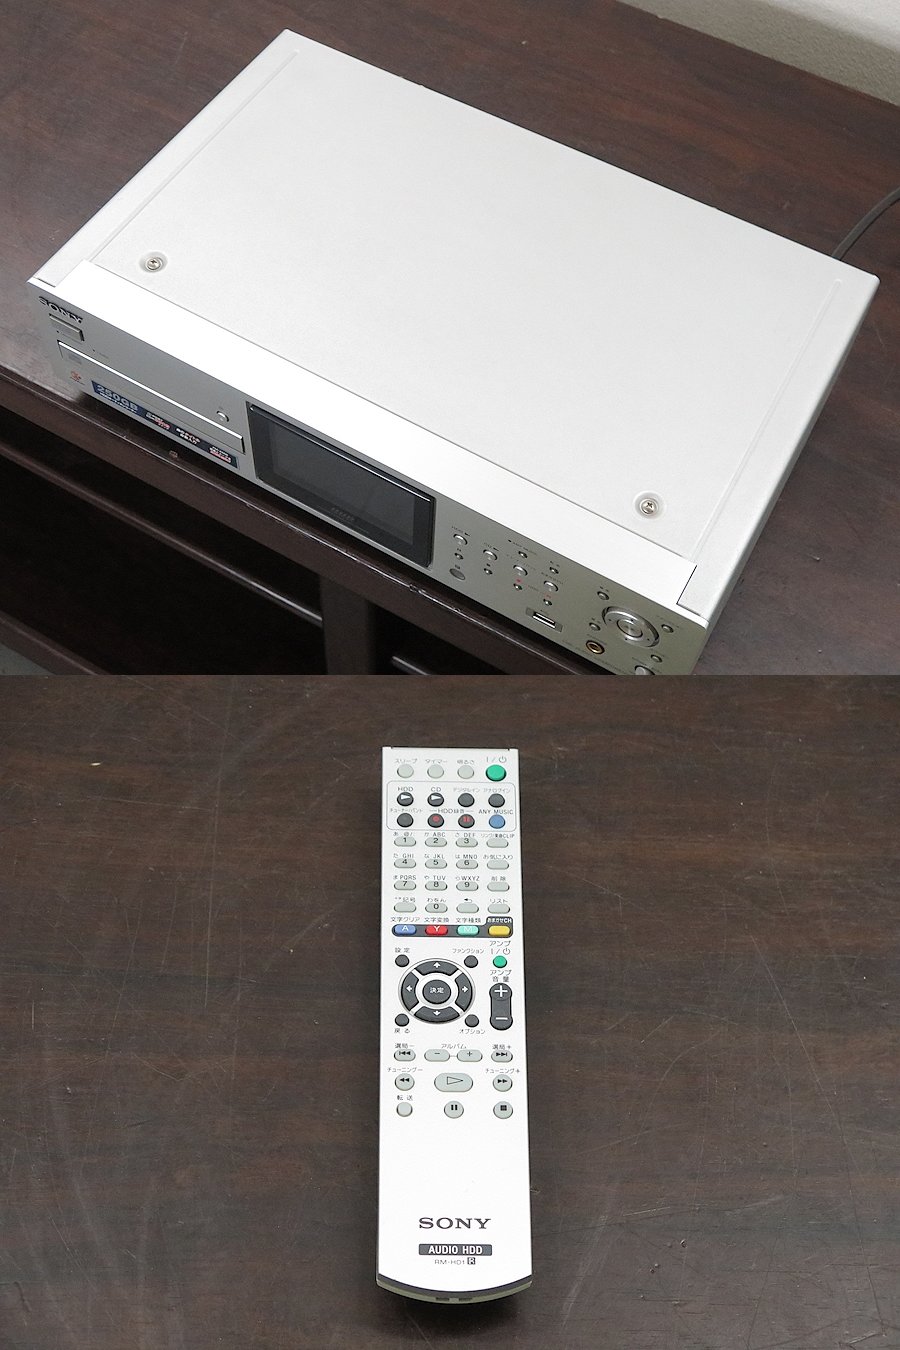 ソニー SONY NAC-HD1 HDDレコーダー @29994 / 中古オーディオ買取